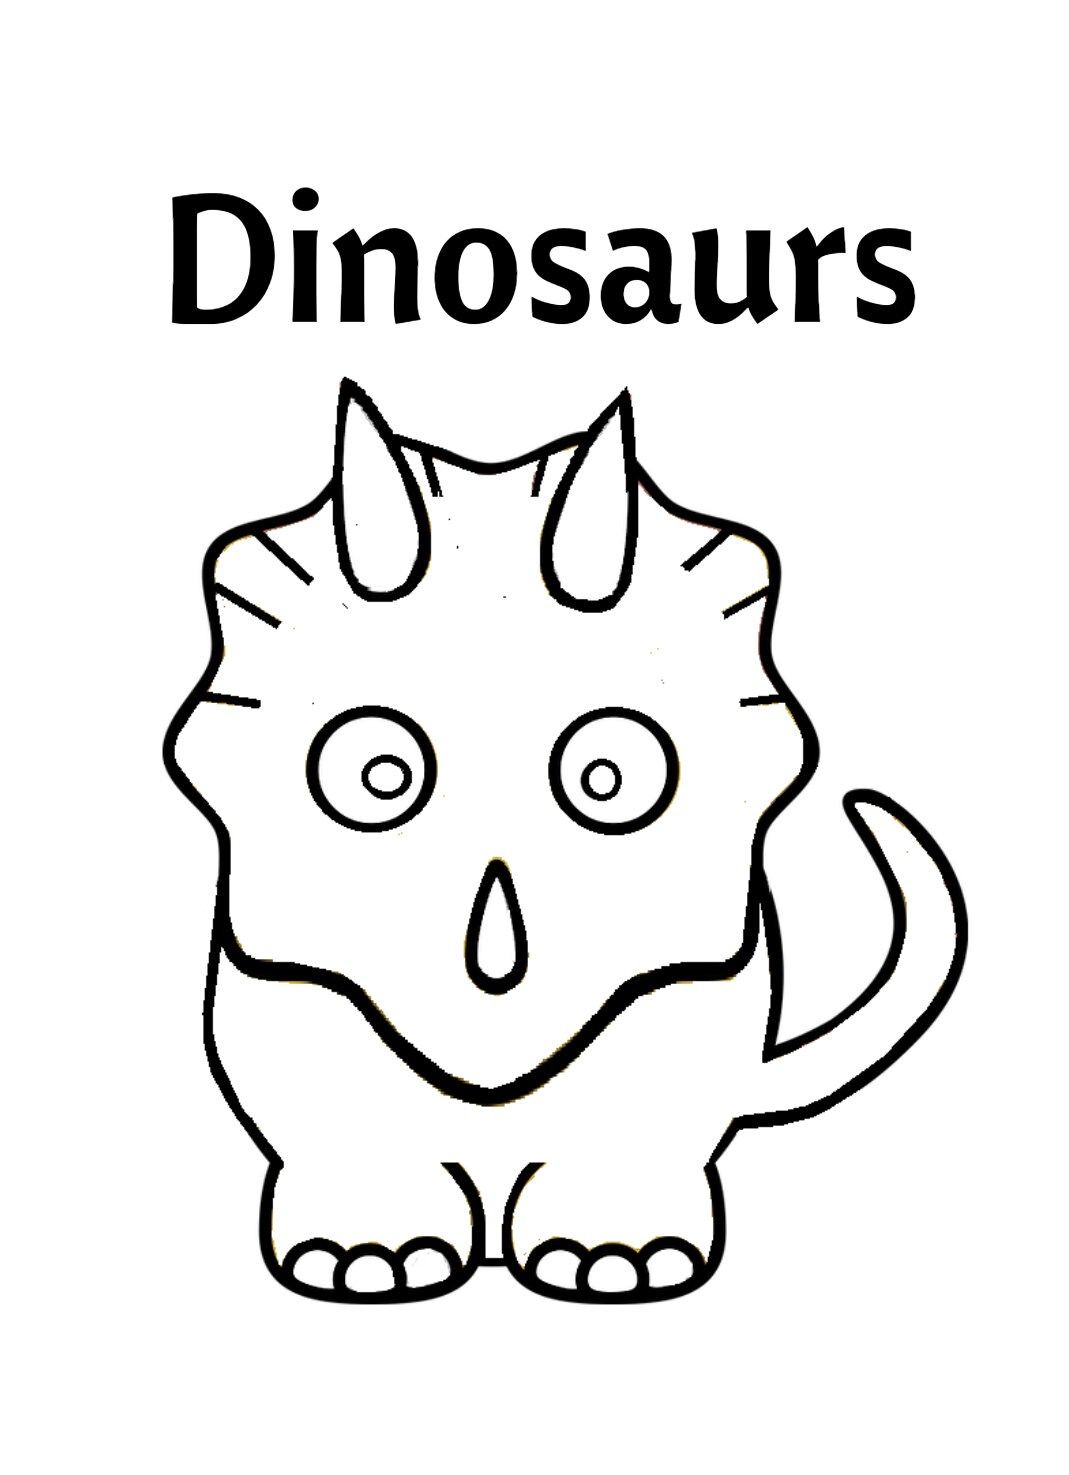 Dinosaur digital coloring book